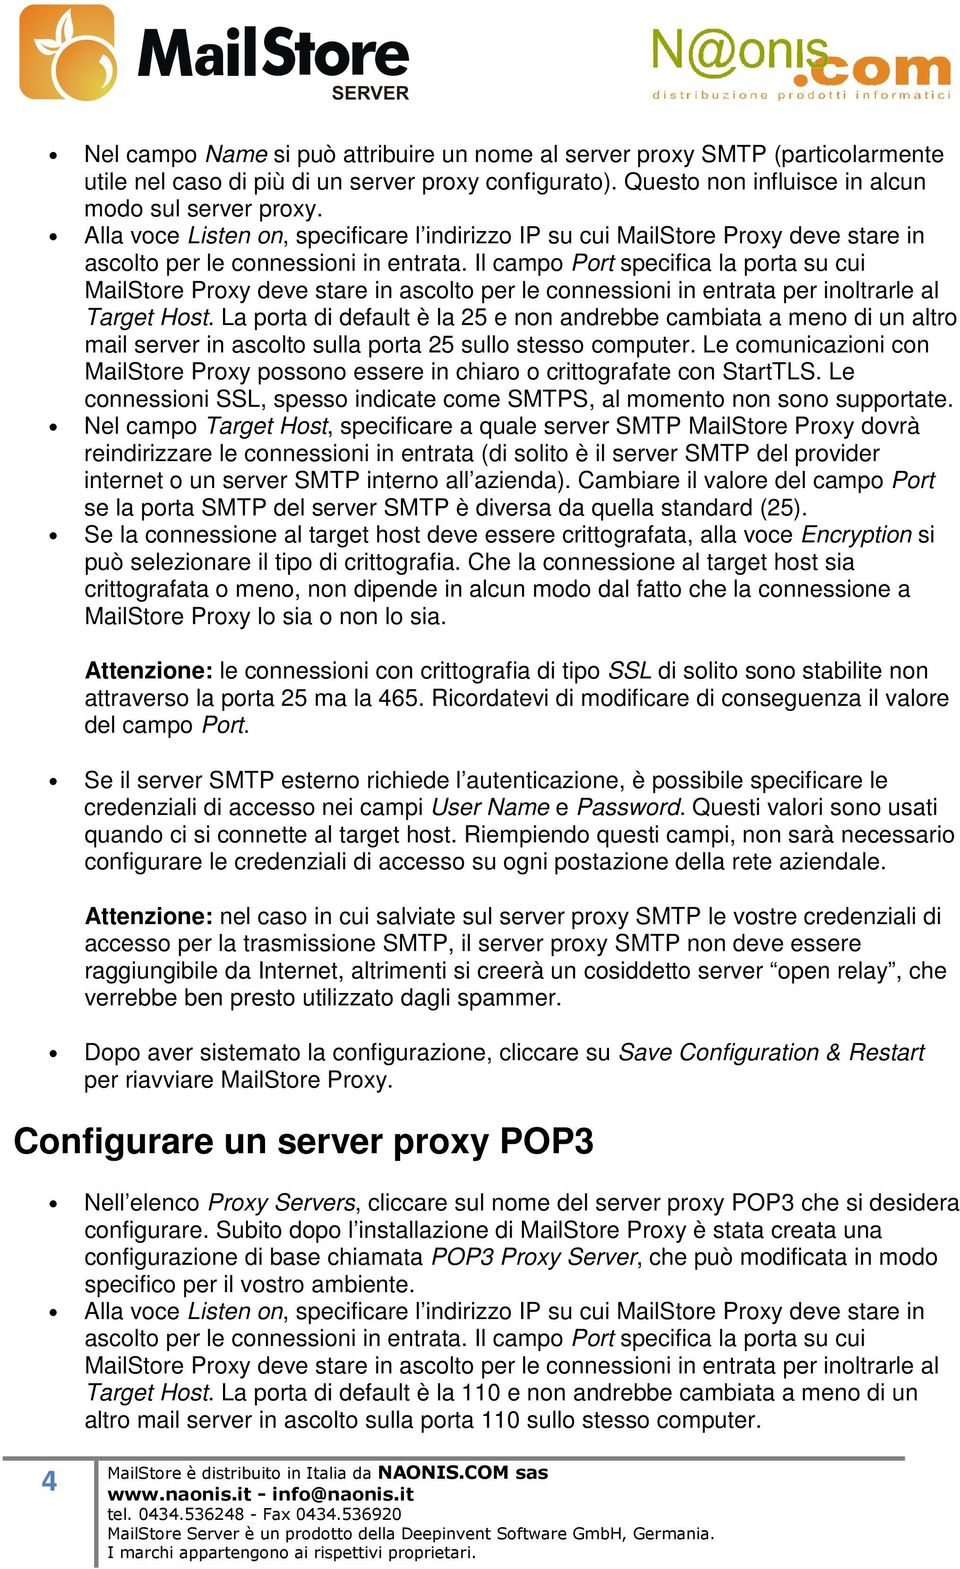 Il campo Port specifica la porta su cui MailStore Proxy deve stare in ascolto per le connessioni in entrata per inoltrarle al Target Host.